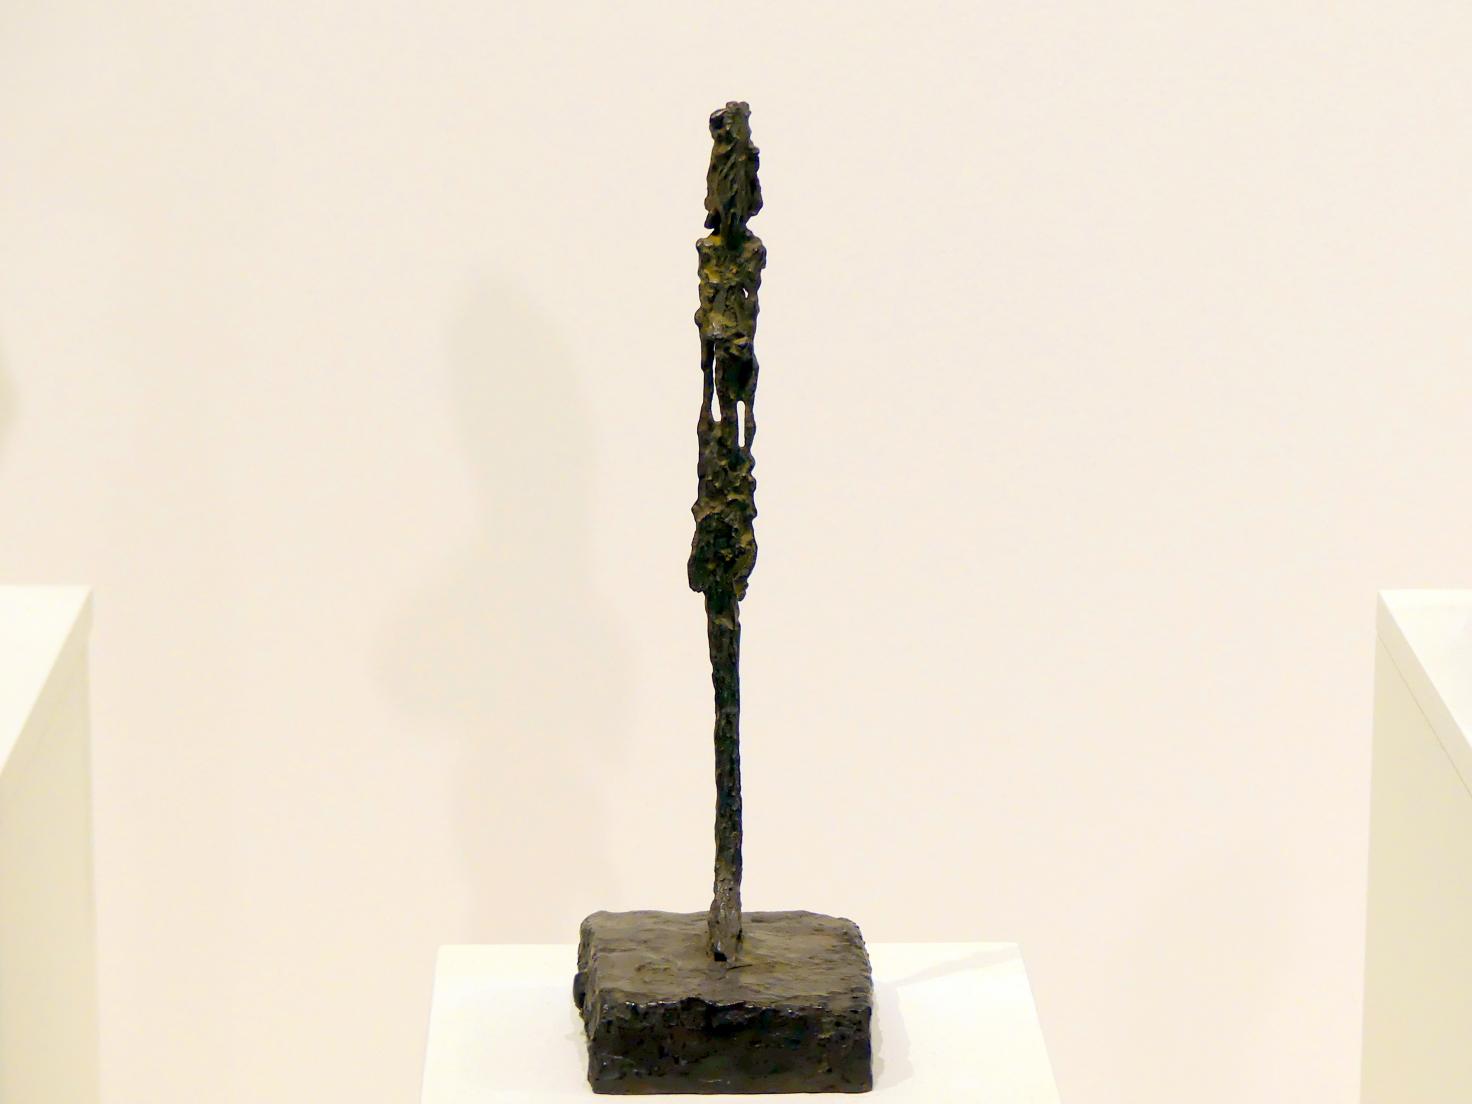 Alberto Giacometti (1914–1965), Statuette, Prag, Nationalgalerie im Messepalast, Ausstellung "Alberto Giacometti" vom 18.07.-01.12.2019, Stehende Figuren, um 1947